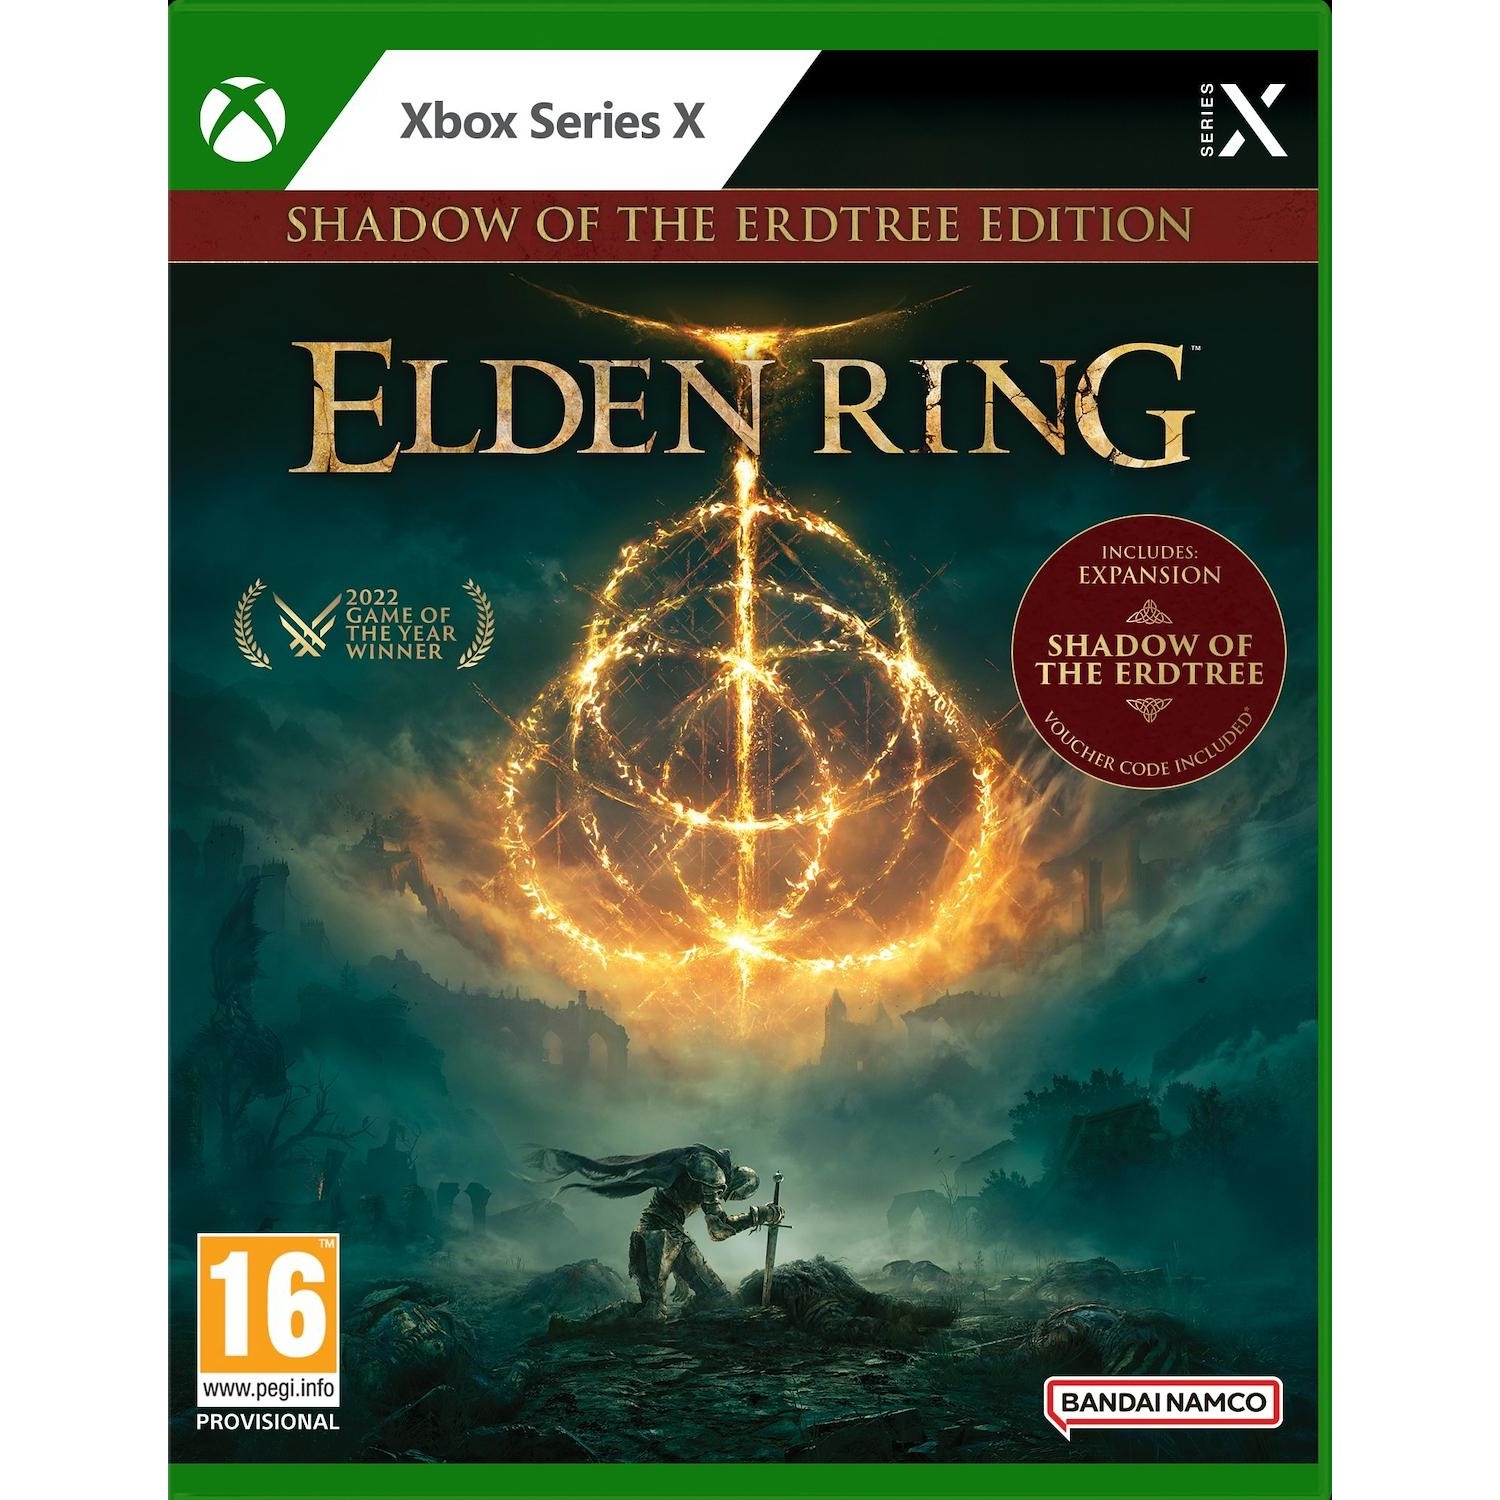 Immagine per Gioco XBOX series X Elden ring: Shadow of the Erdtree Edition da DIMOStore